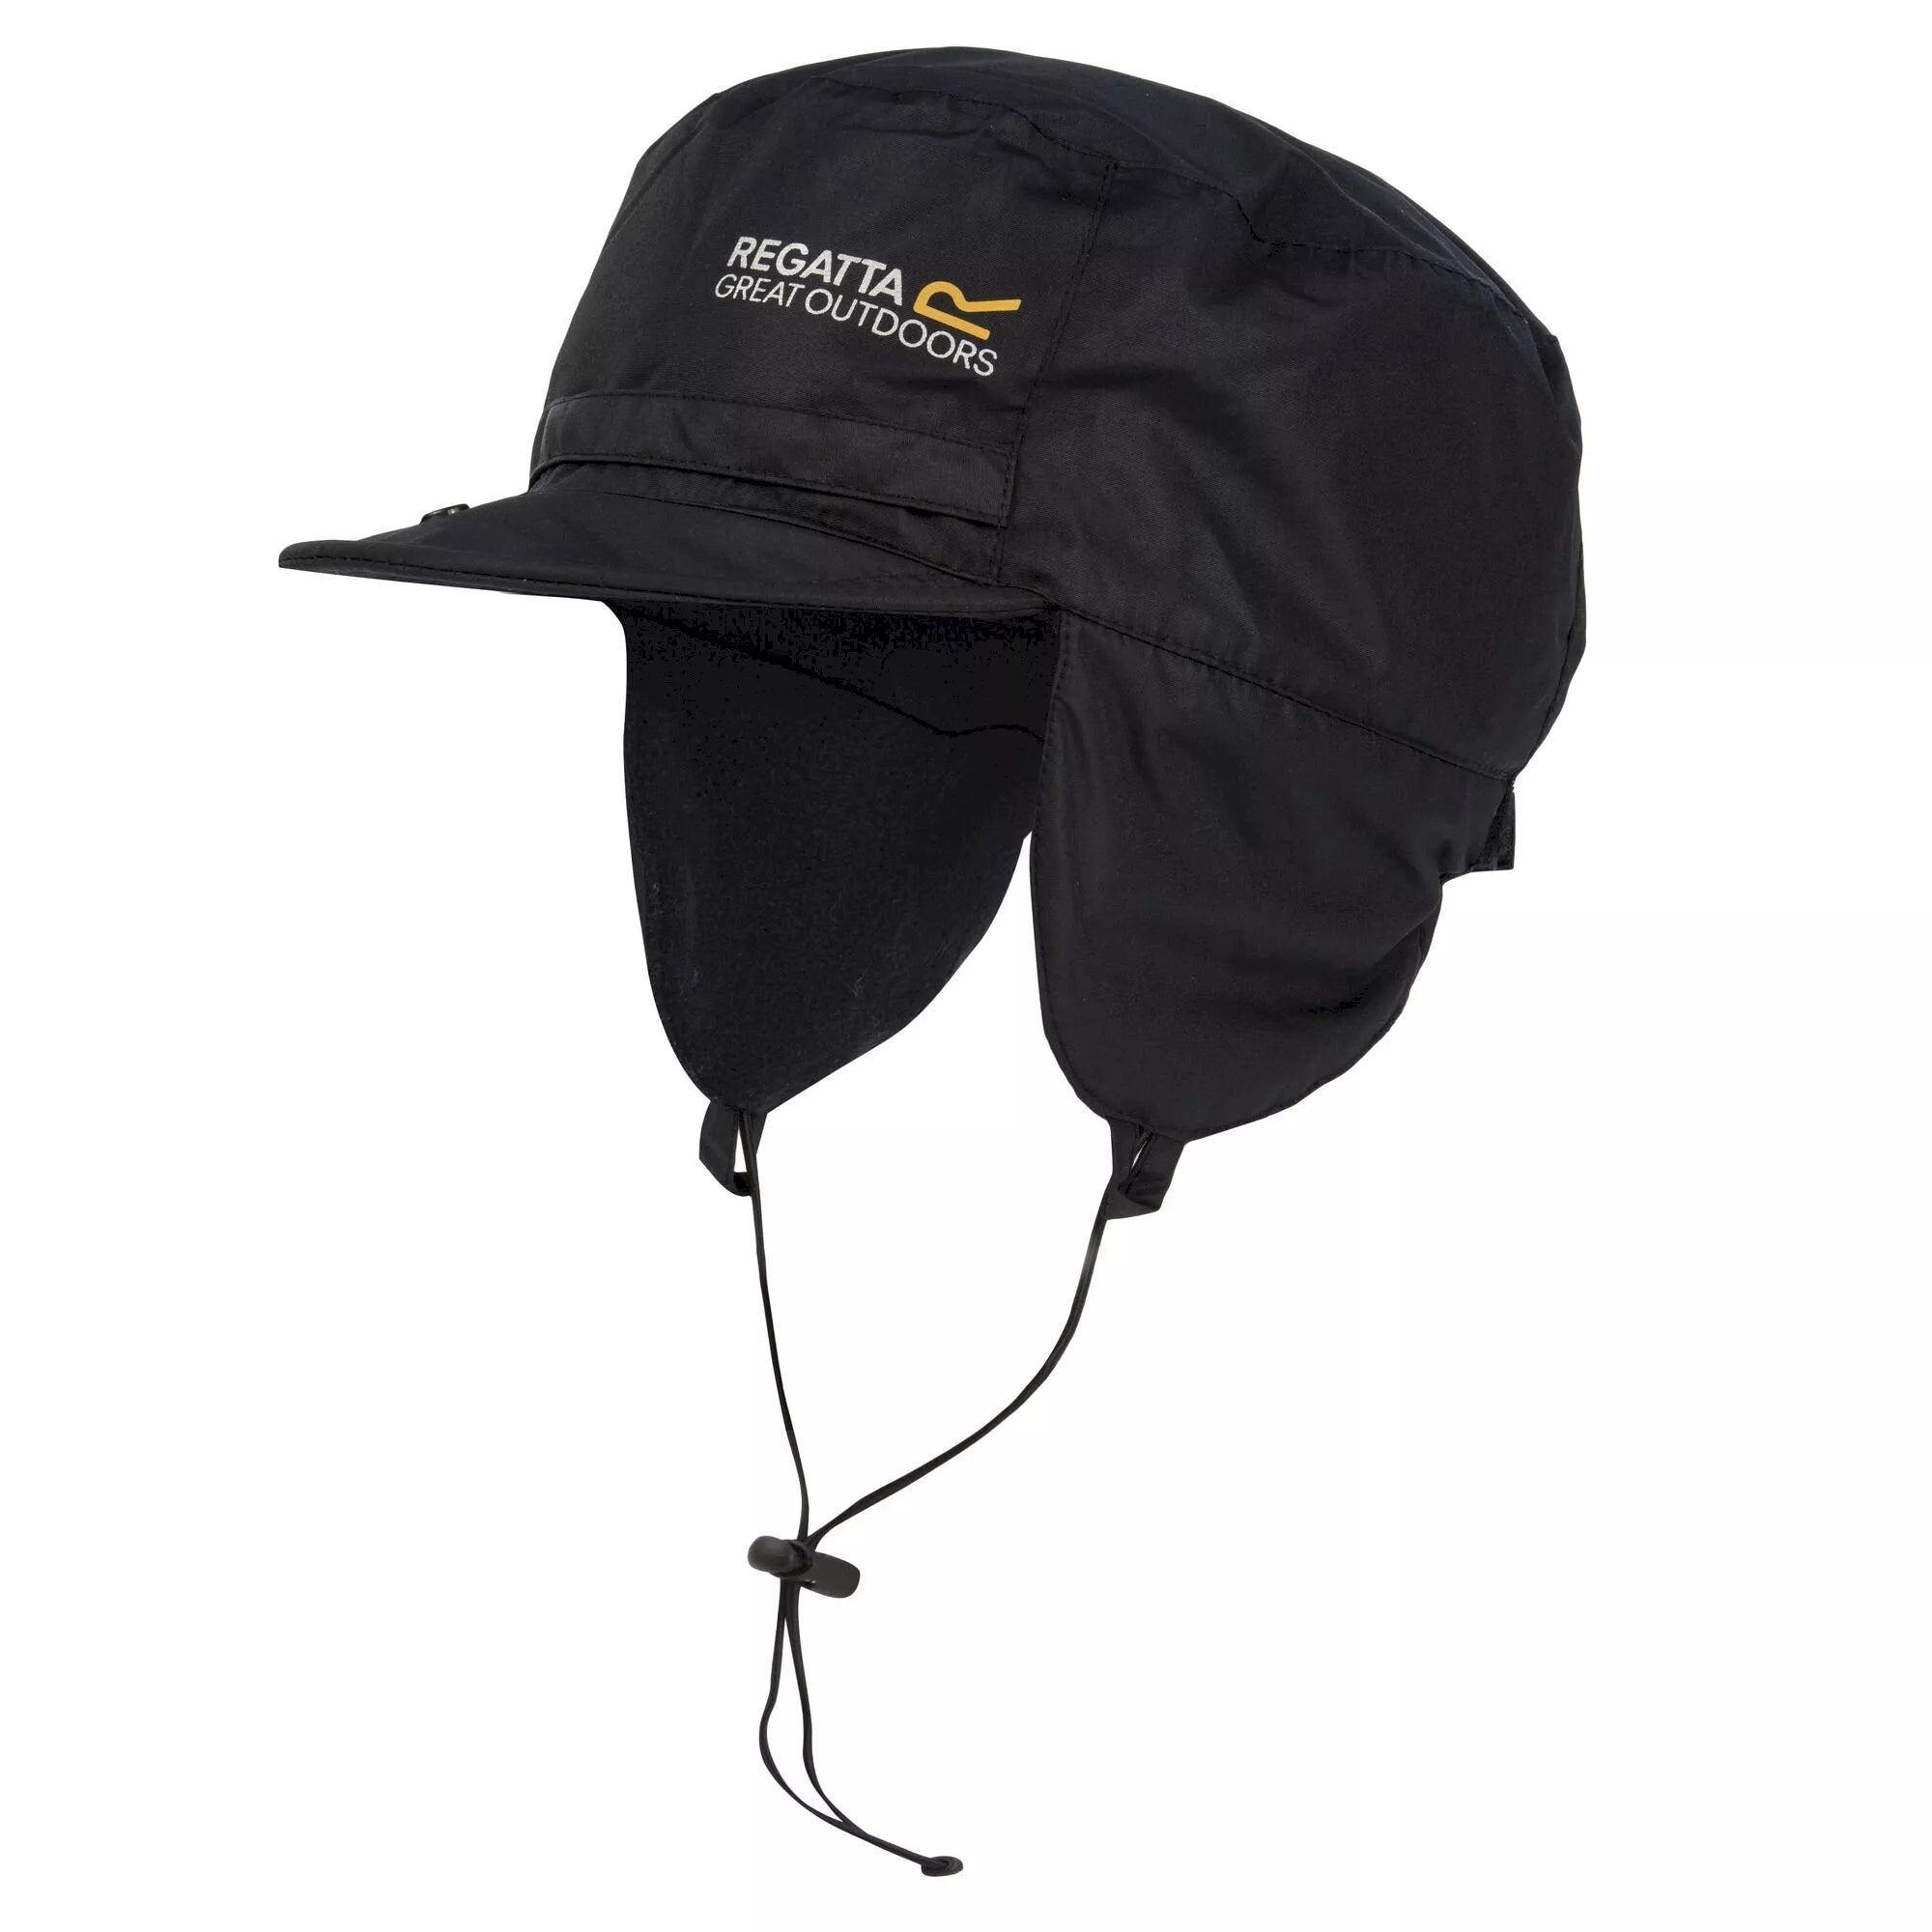 Regatta Padded Igniter Waterproof Trapper Hat Black